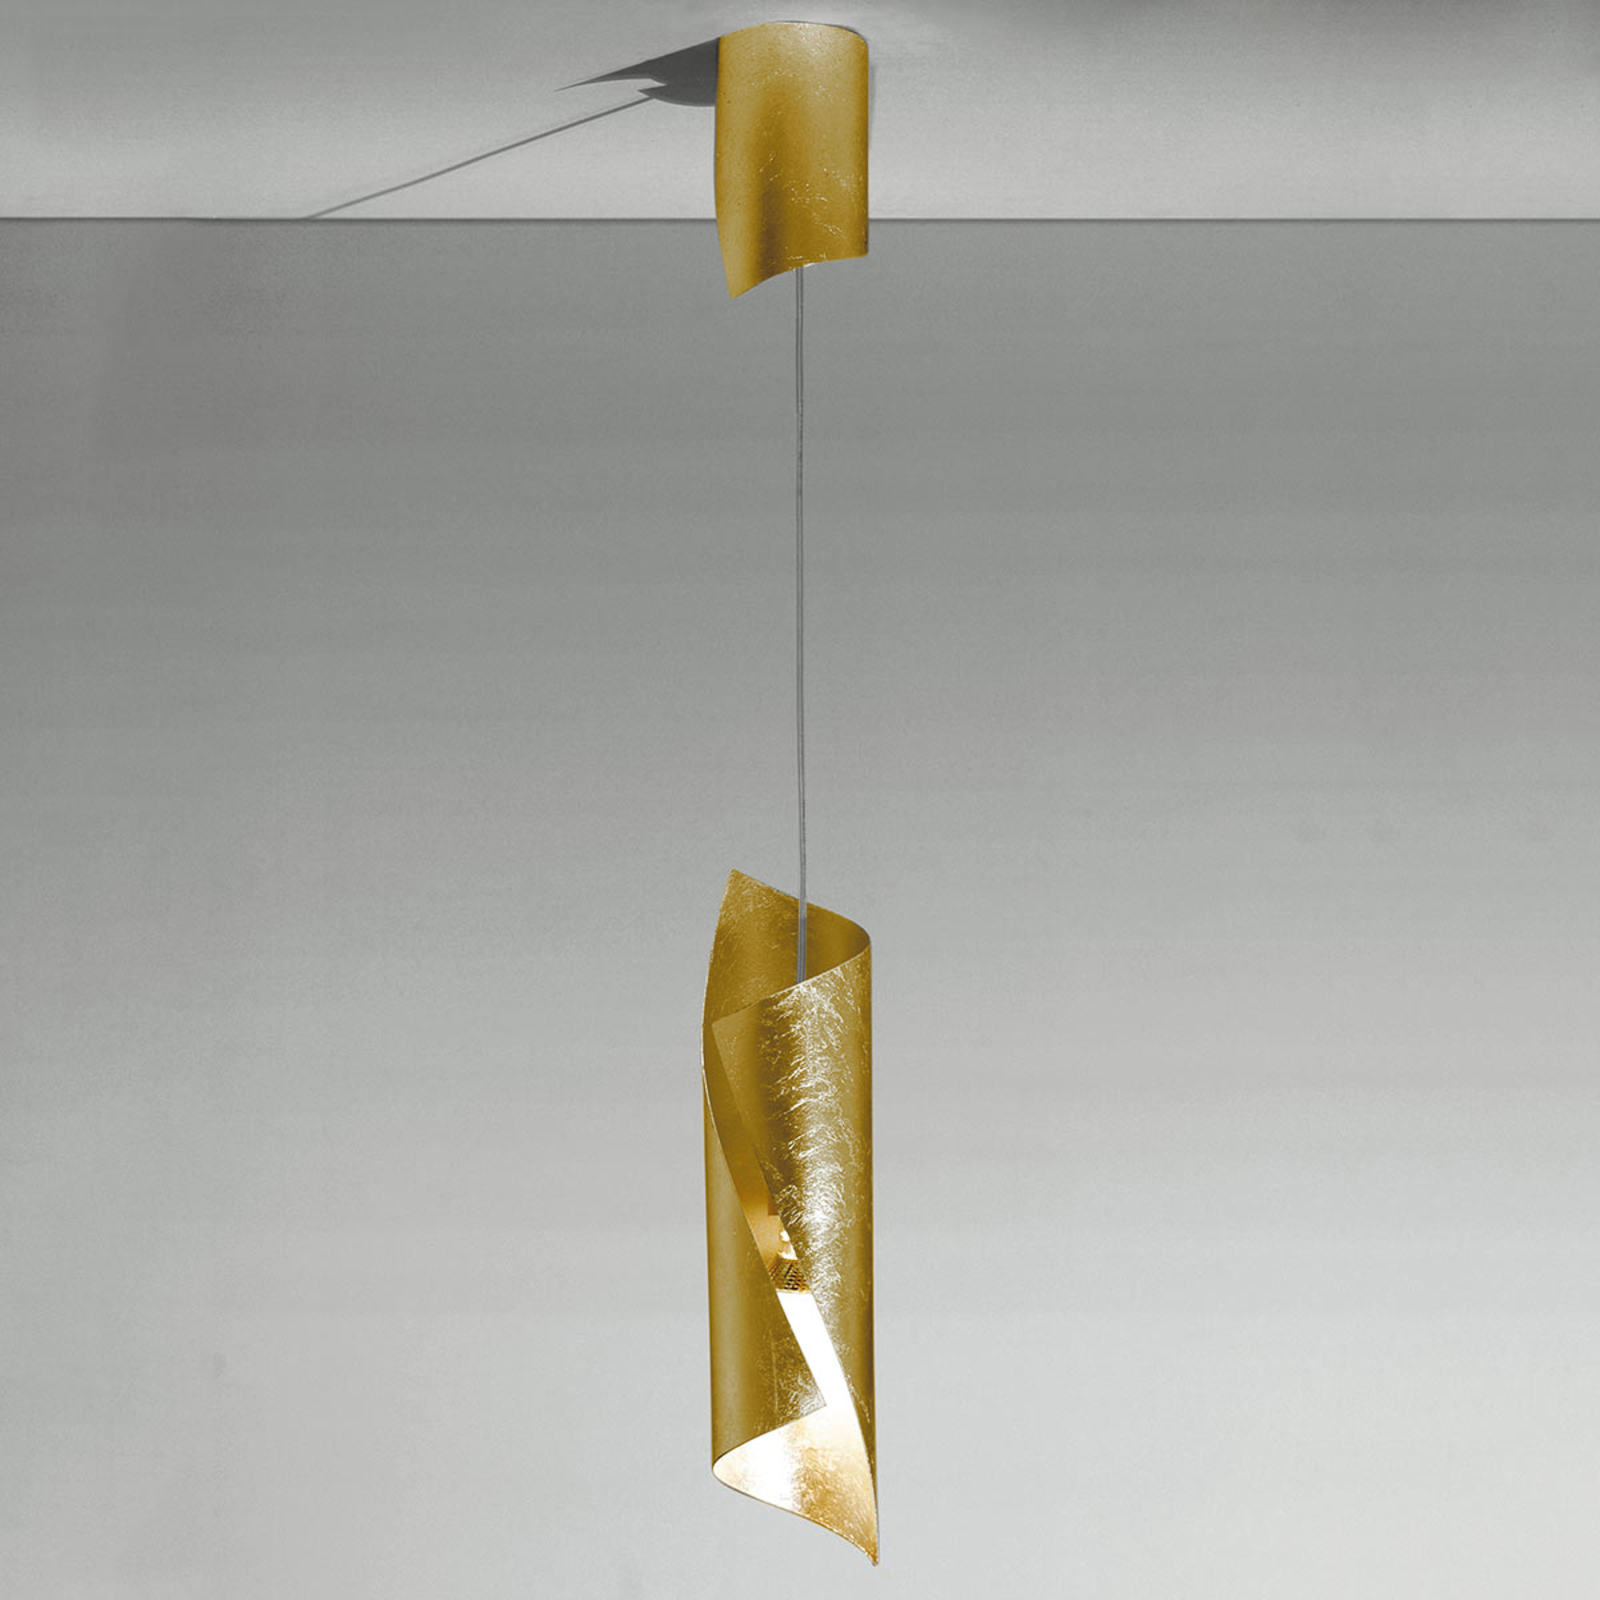 Knikerboker Hué LED-es függőlámpa 8x37 cm arany levéllel